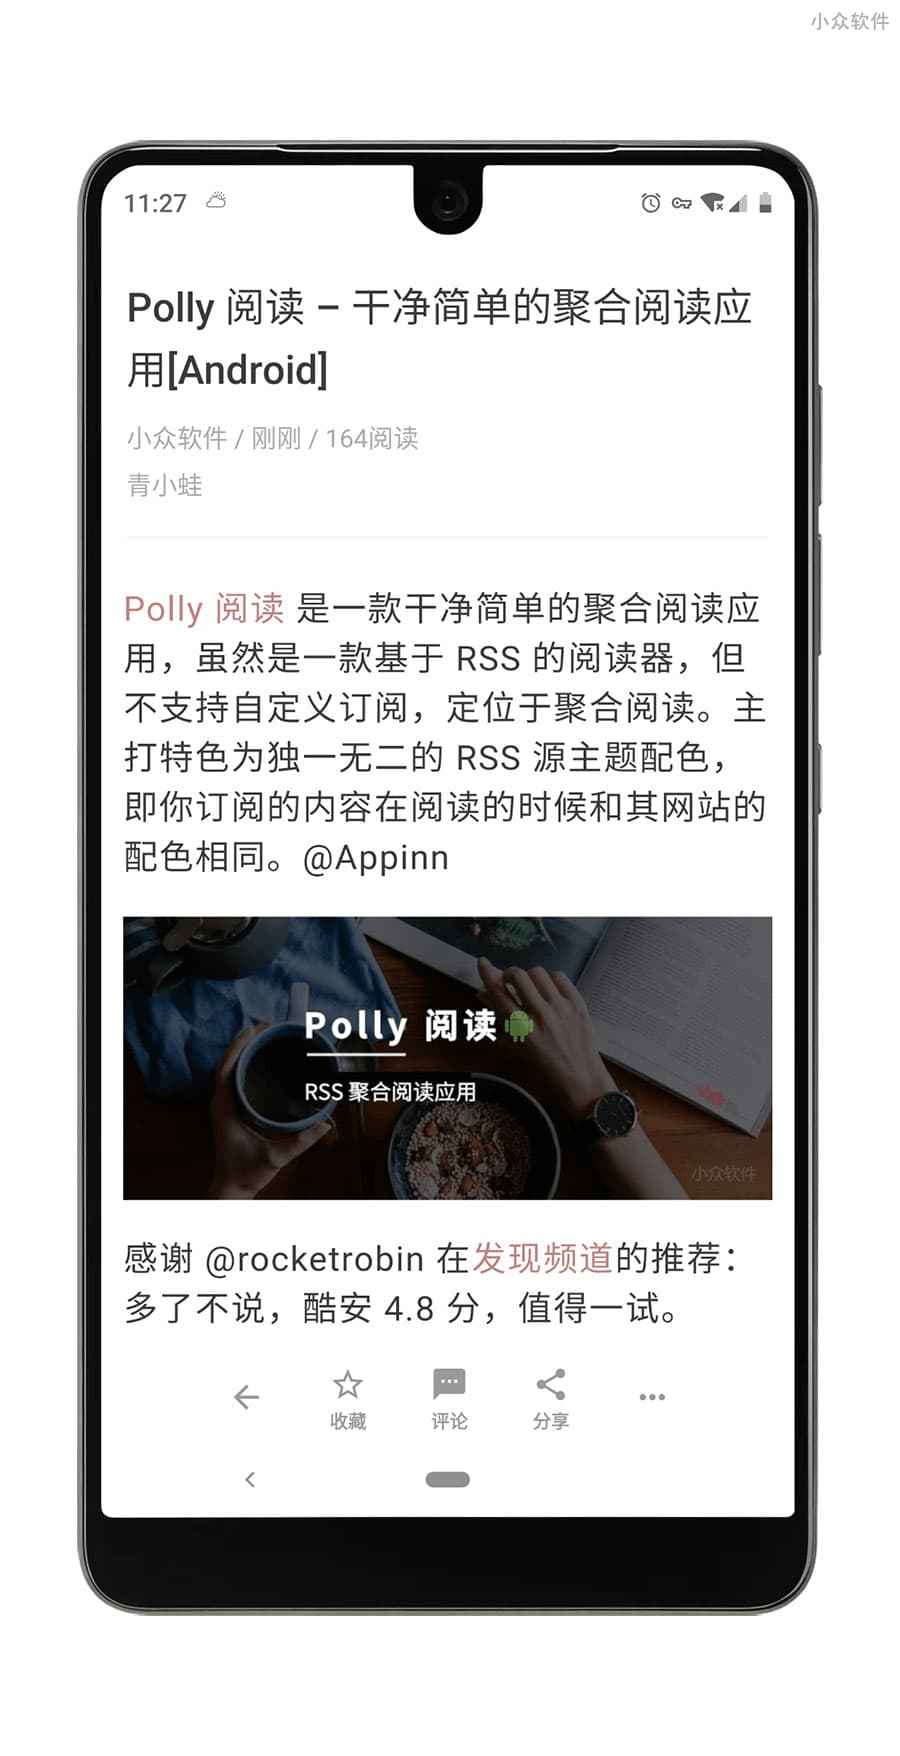 Polly 阅读 - 干净简单的聚合阅读应用[Android] 4